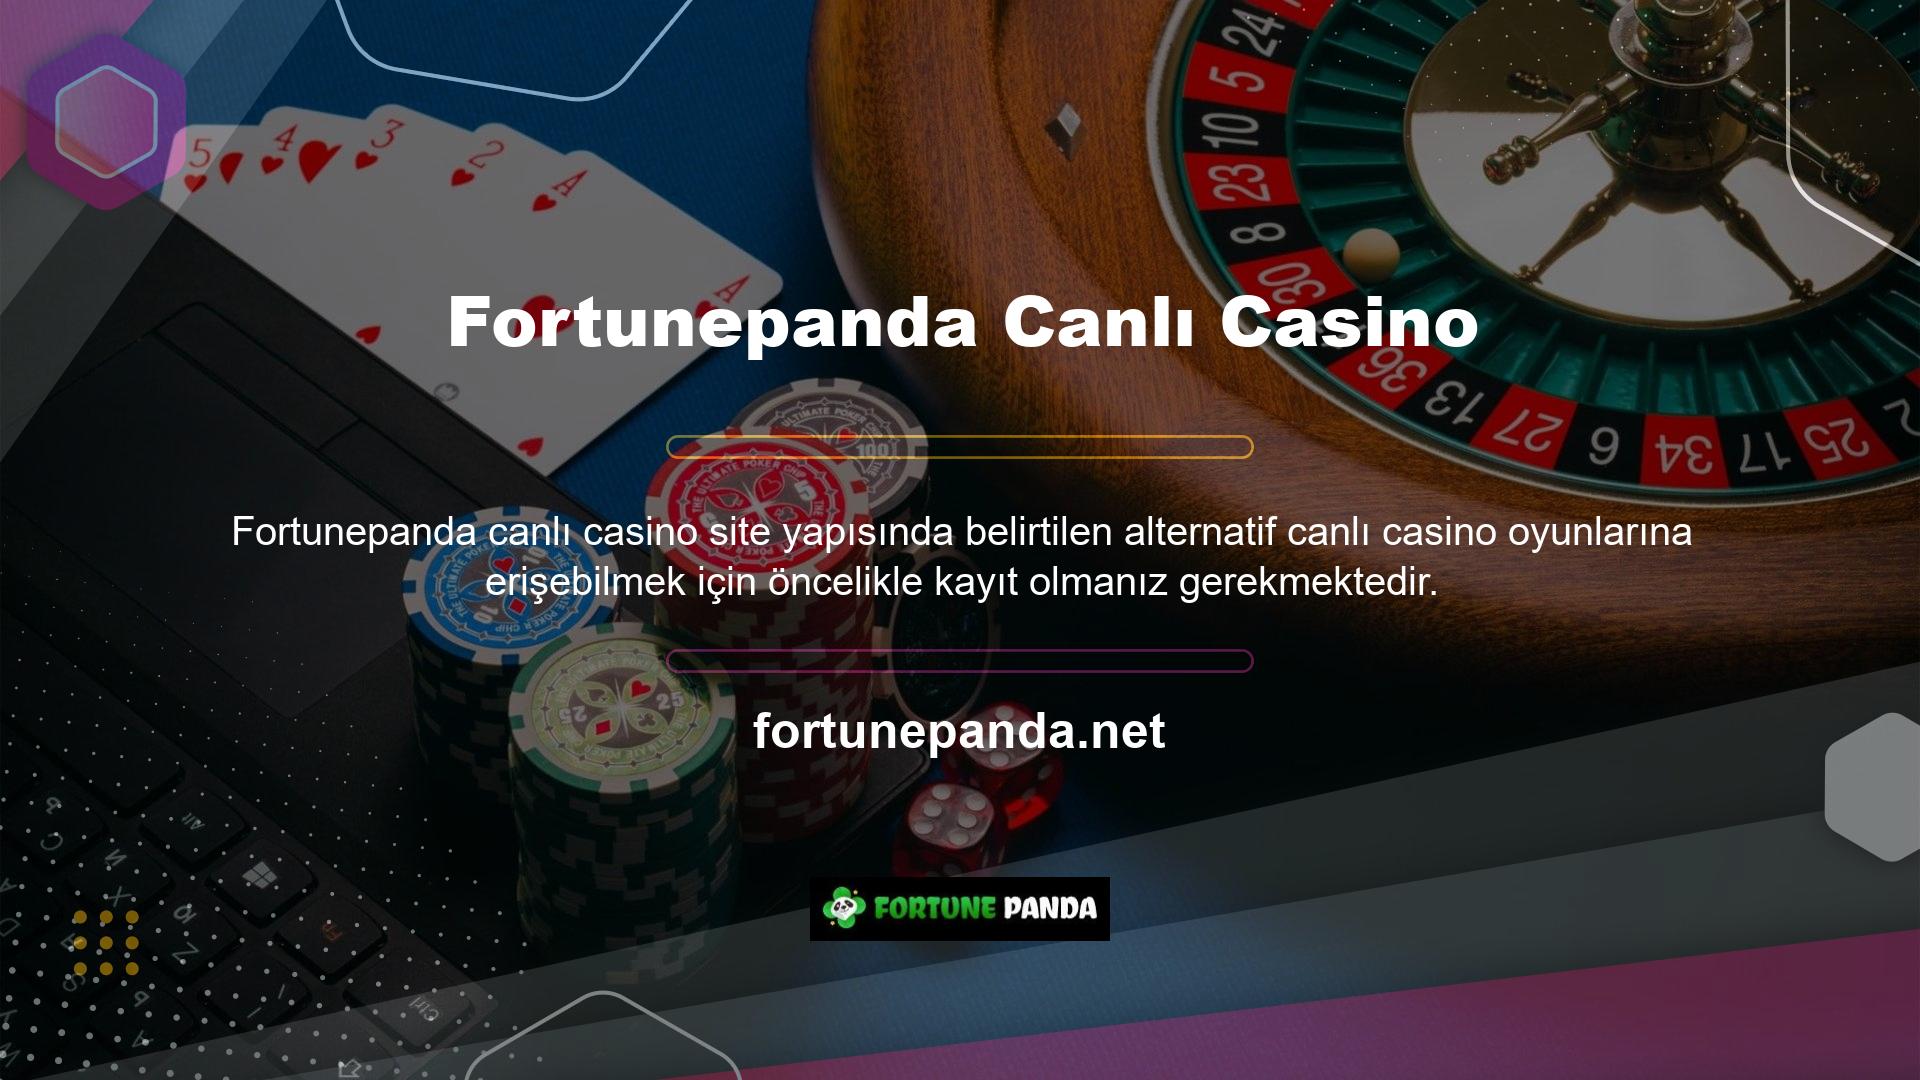 Fortunepanda canlı casino, oyuncuların keyif alabileceği çok çeşitli alternatif oyunlar sunmaktadır